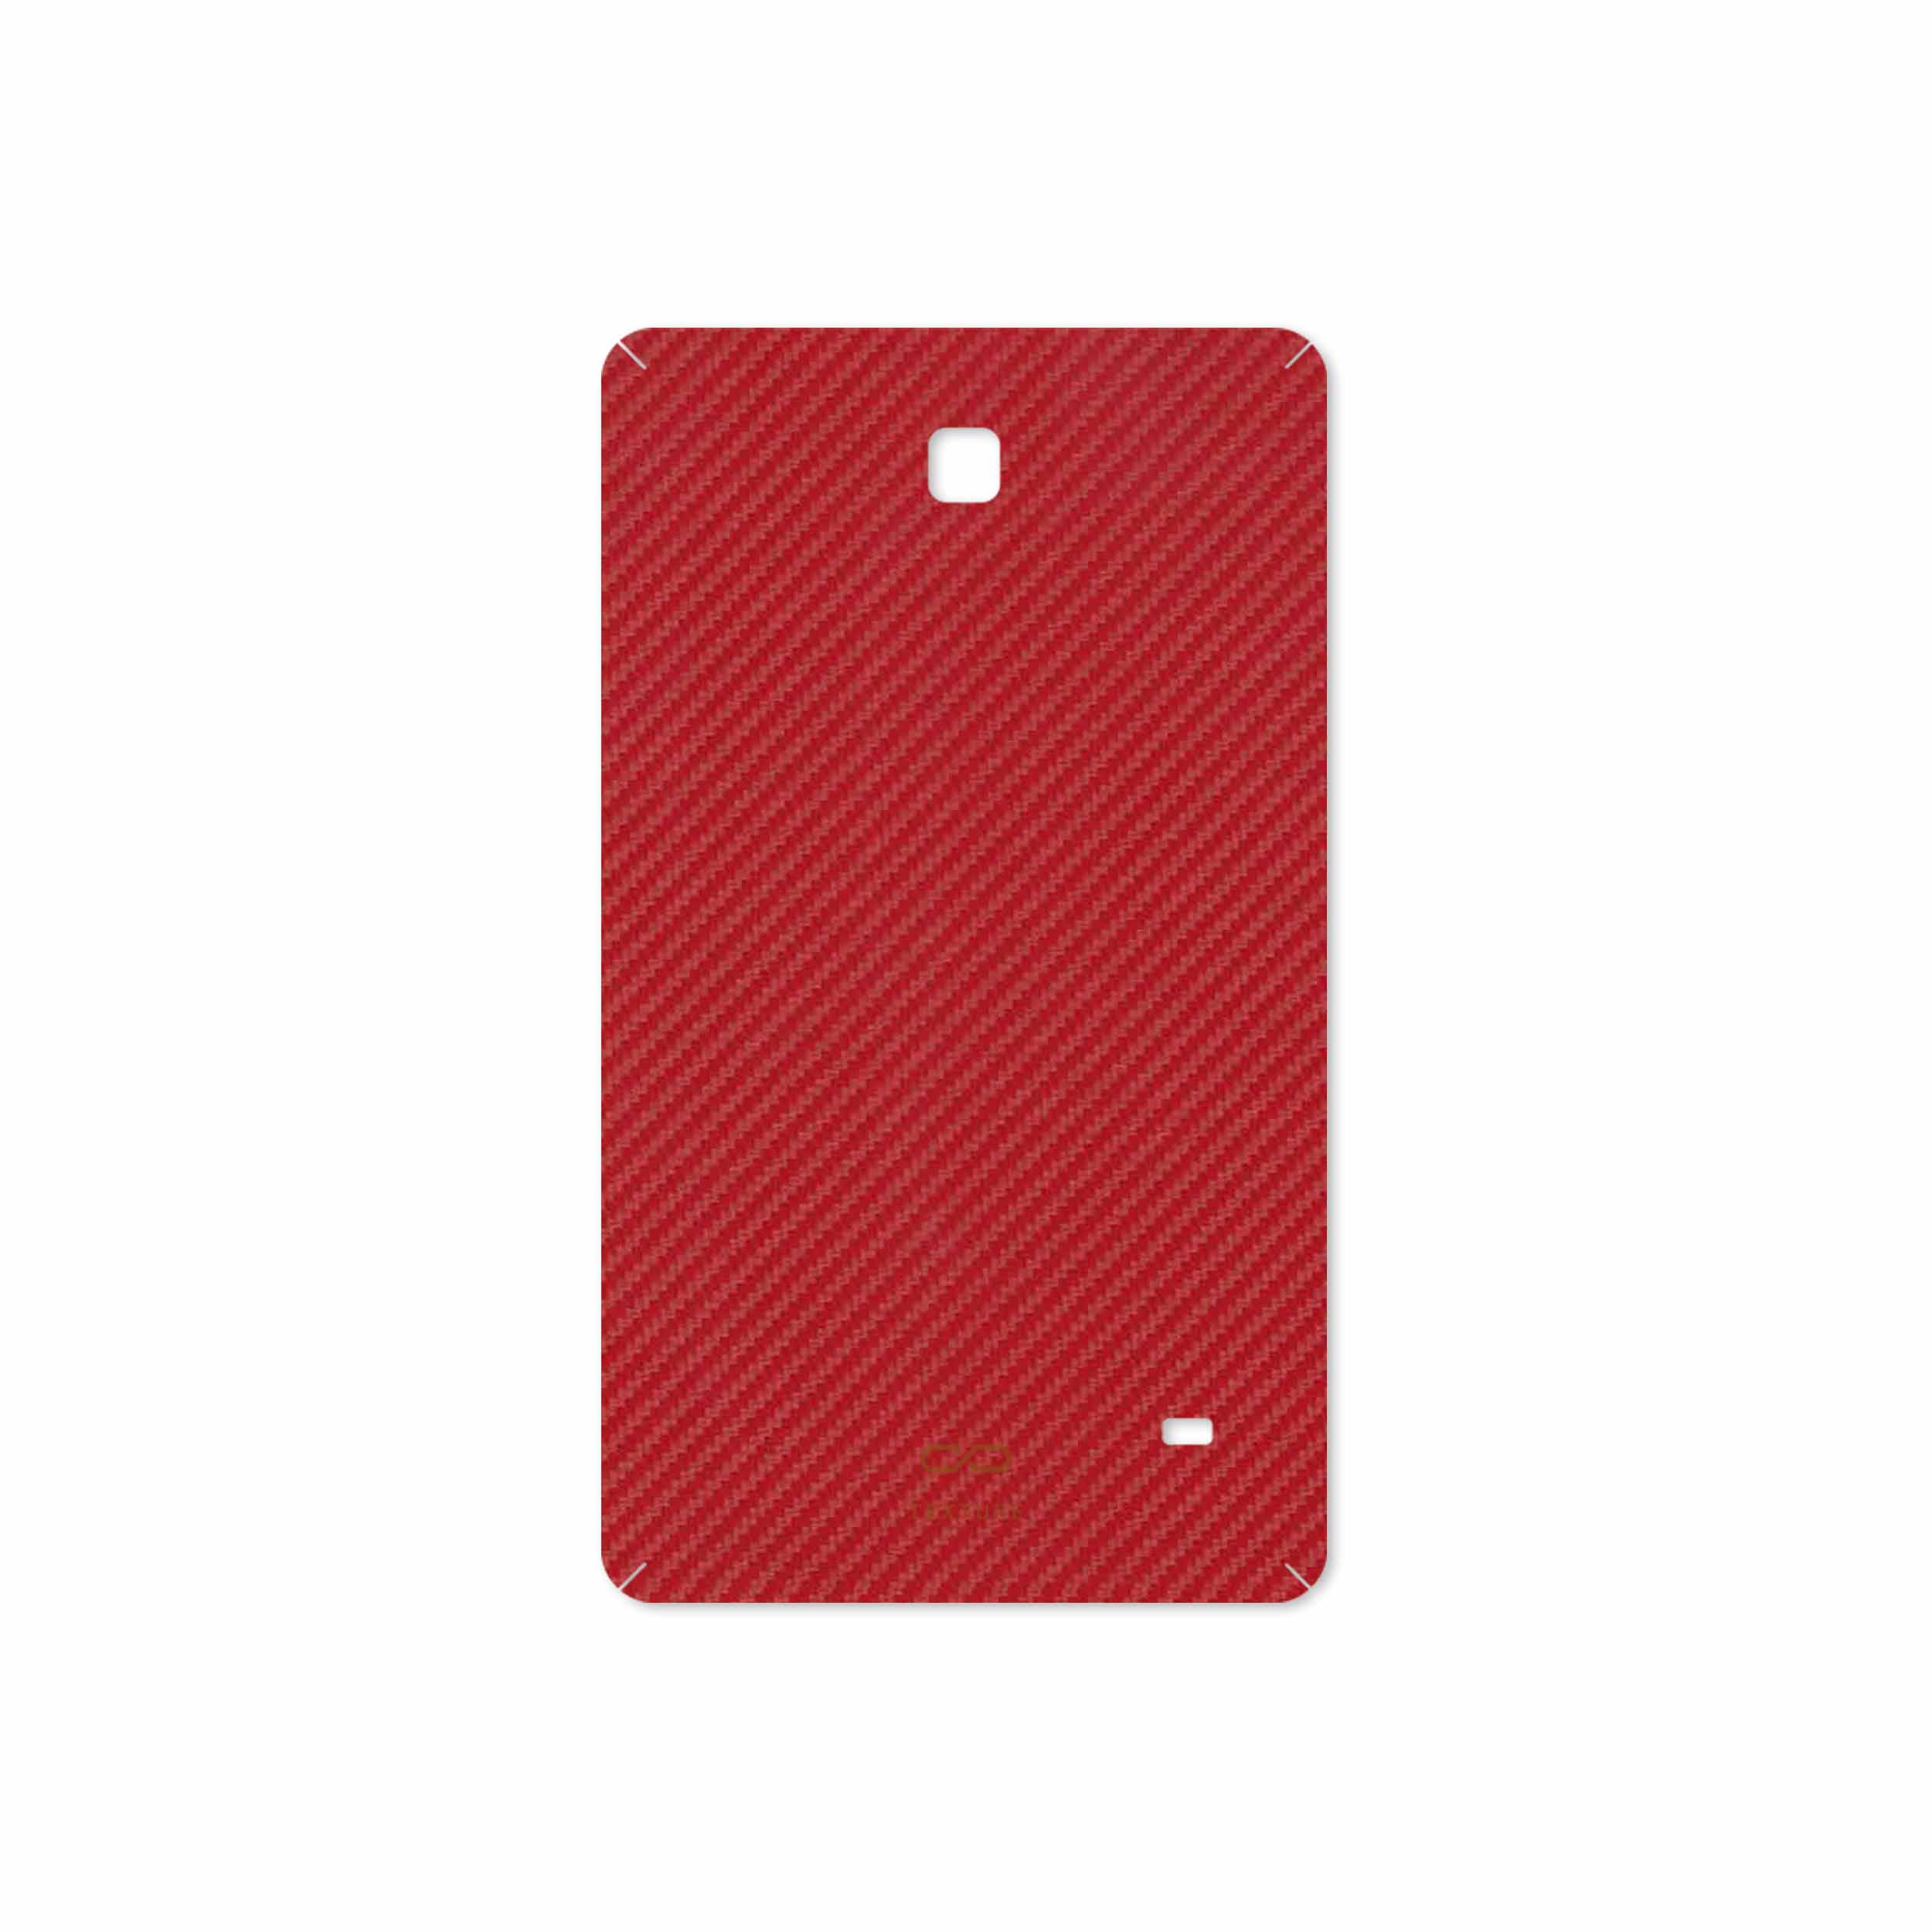 برچسب پوششی ماهوت مدل Red-Fiber مناسب برای تبلت سامسونگ Galaxy Tab 4 7.0 2014 T230